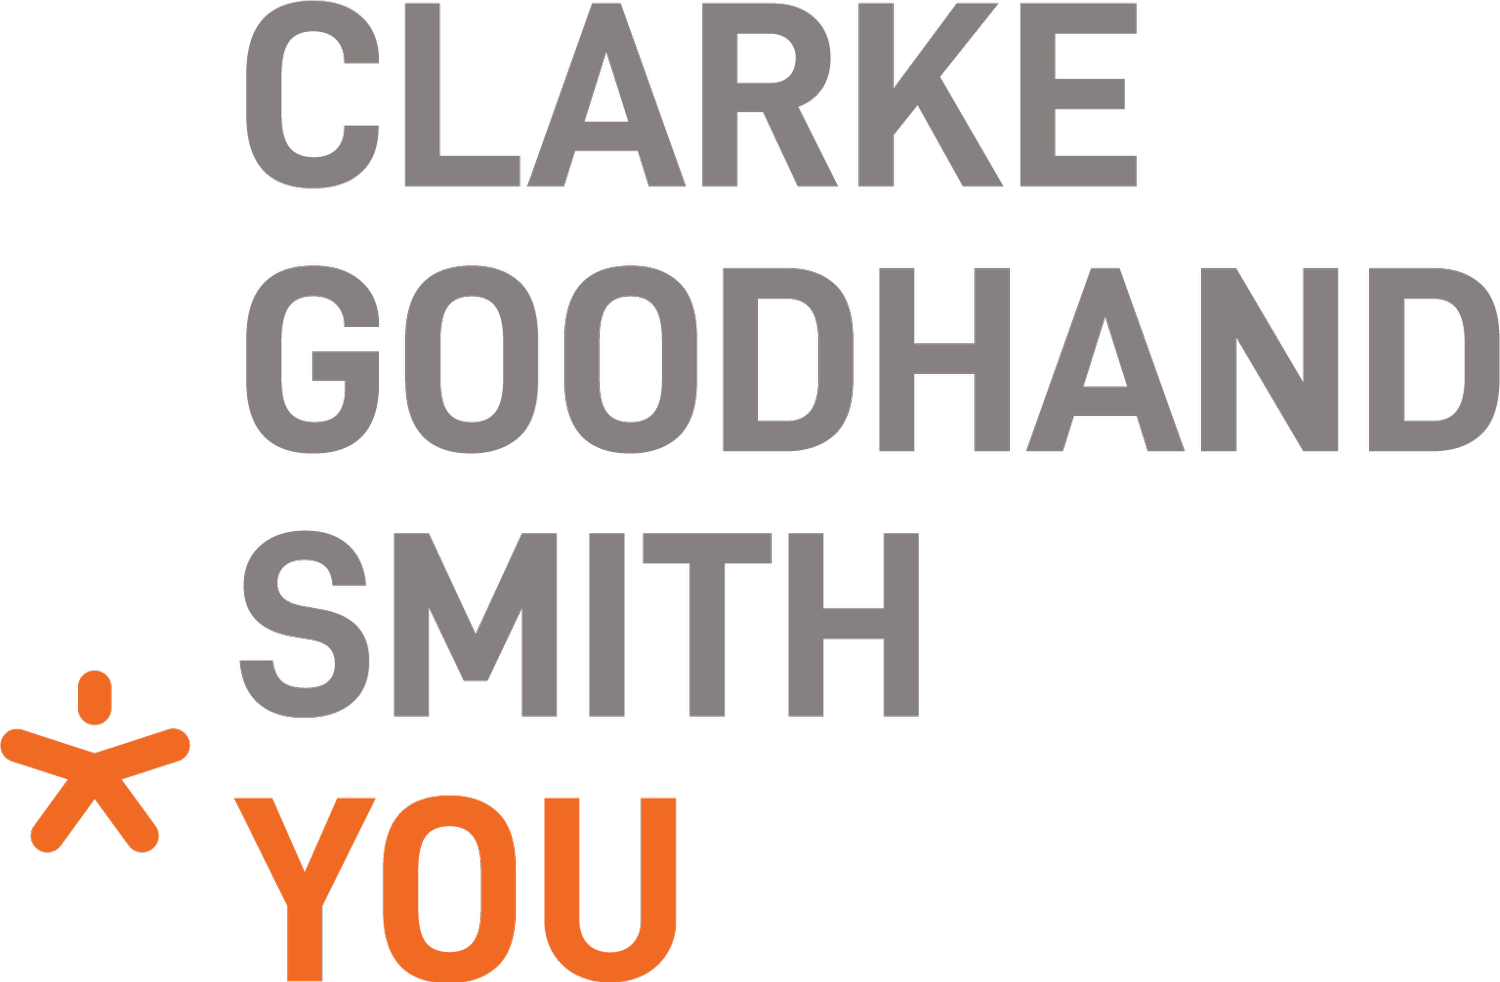 Clarke Goodhand Smith You